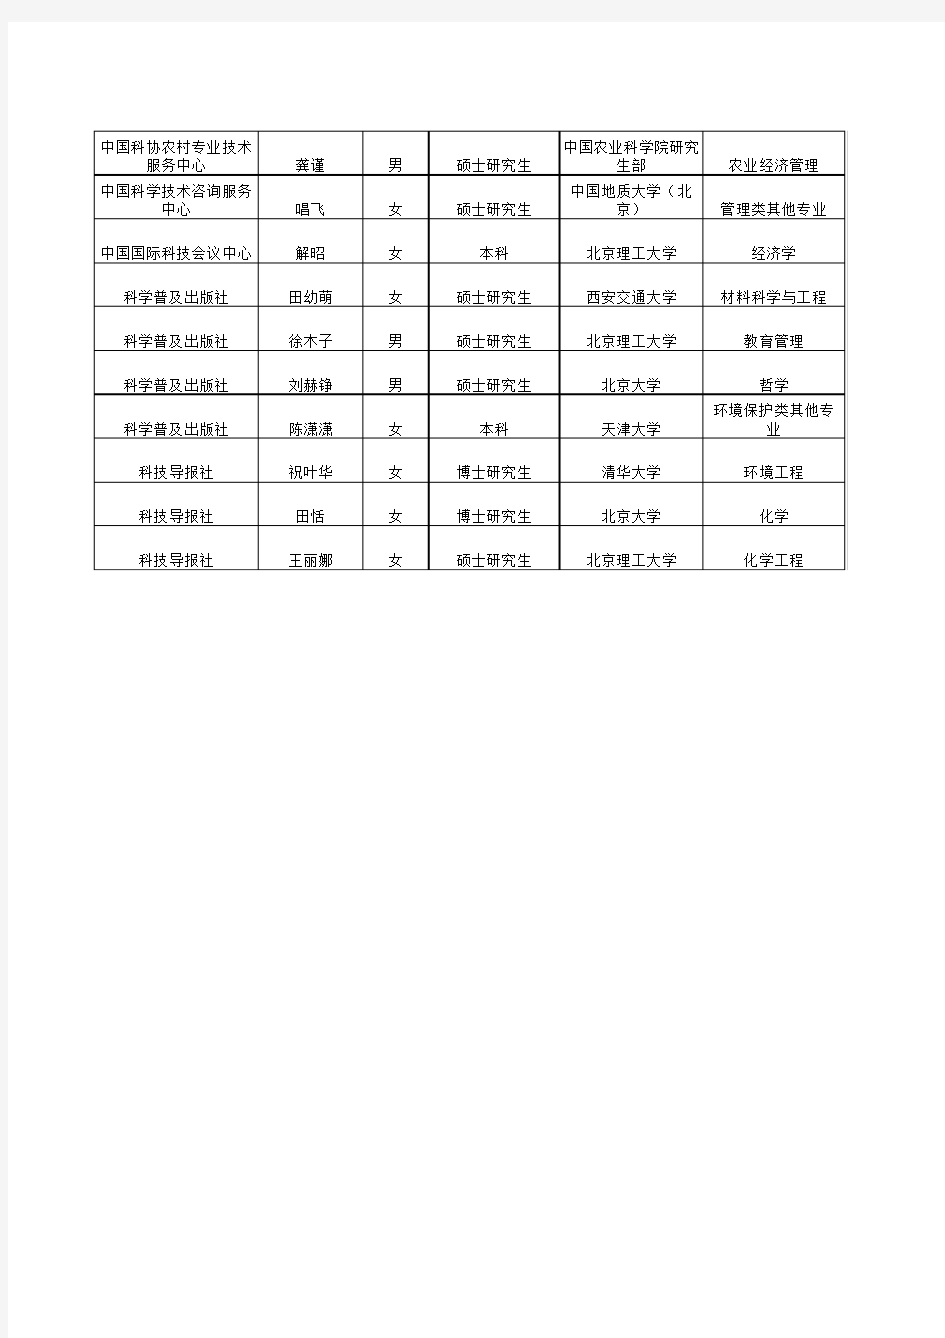 中国科学技术协会2013年度接收毕业生情况公示-Sheet0